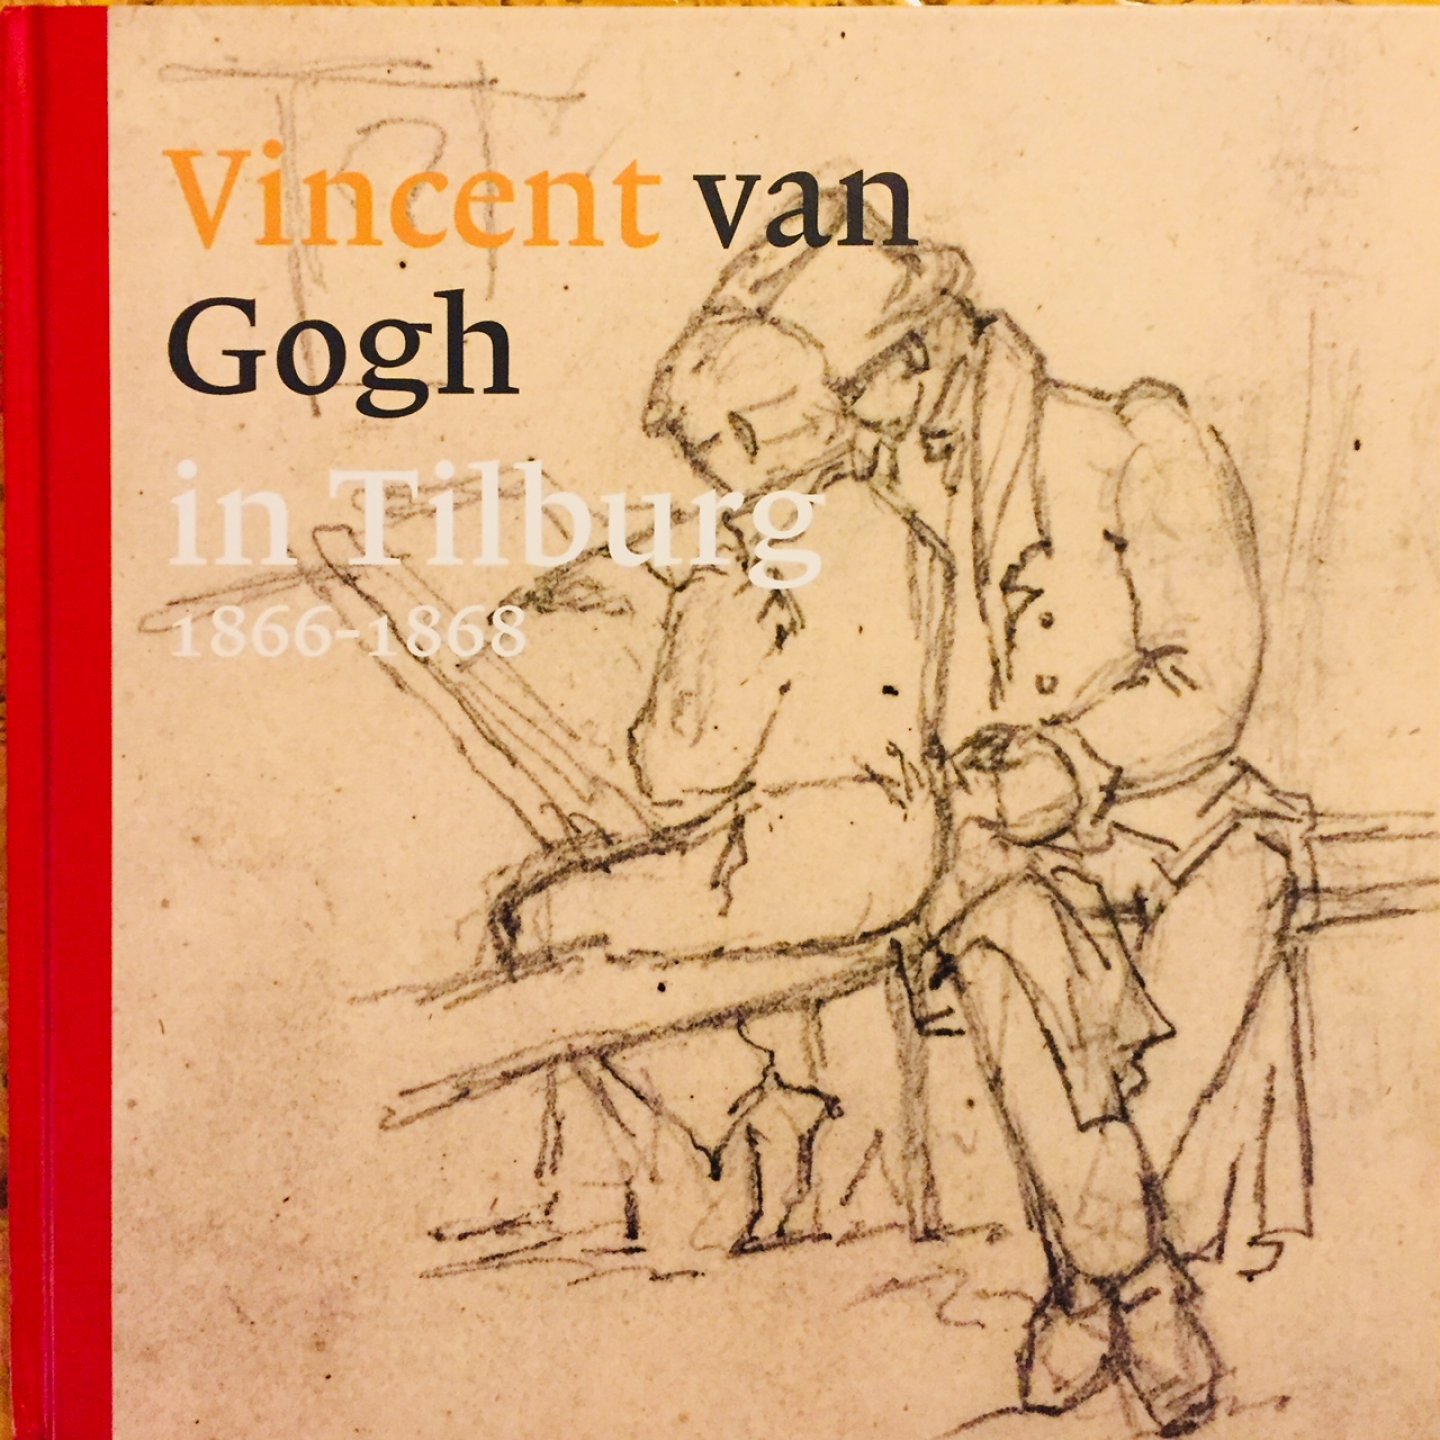 Peeters, Ronald.  van Doremalen, Henk.  van den Eerenbeemt, H.F.J.M. - Vincent van Gogh in Tilburg 1866-1868.